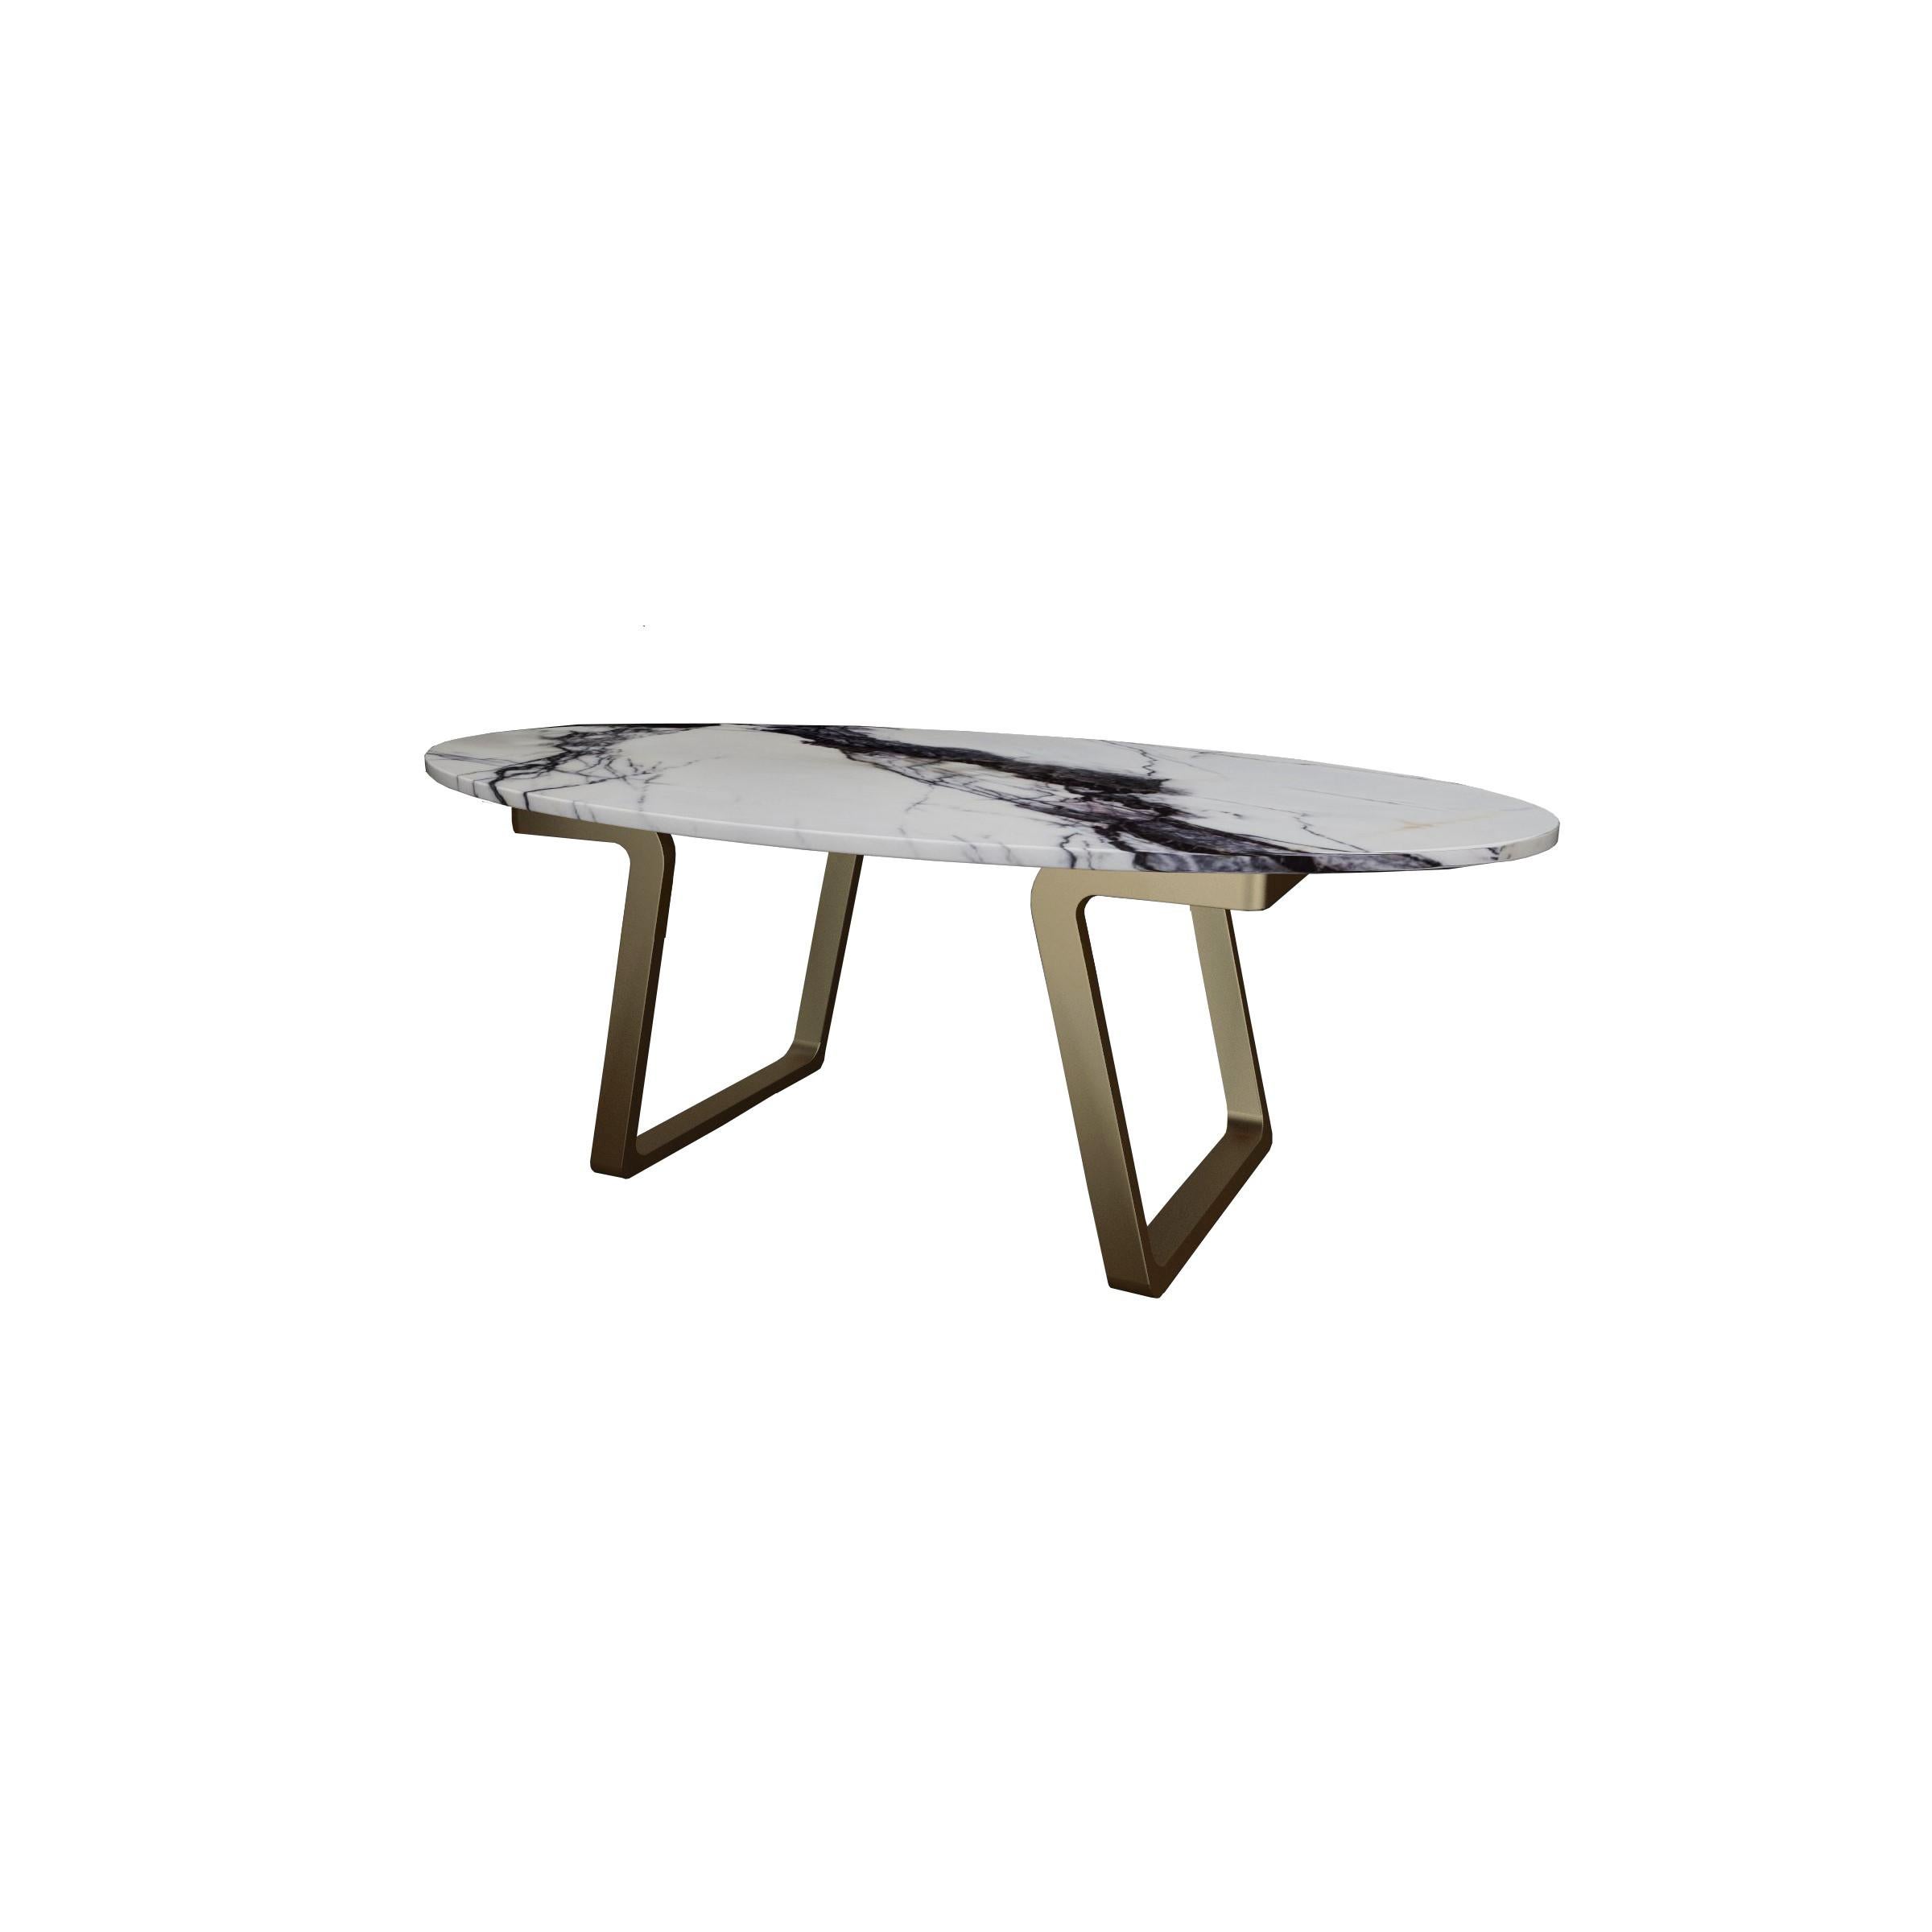 Scandinave moderne Table basse NORDST JERRY, marbre gris Rain italien, design moderne danois, nouveau en vente